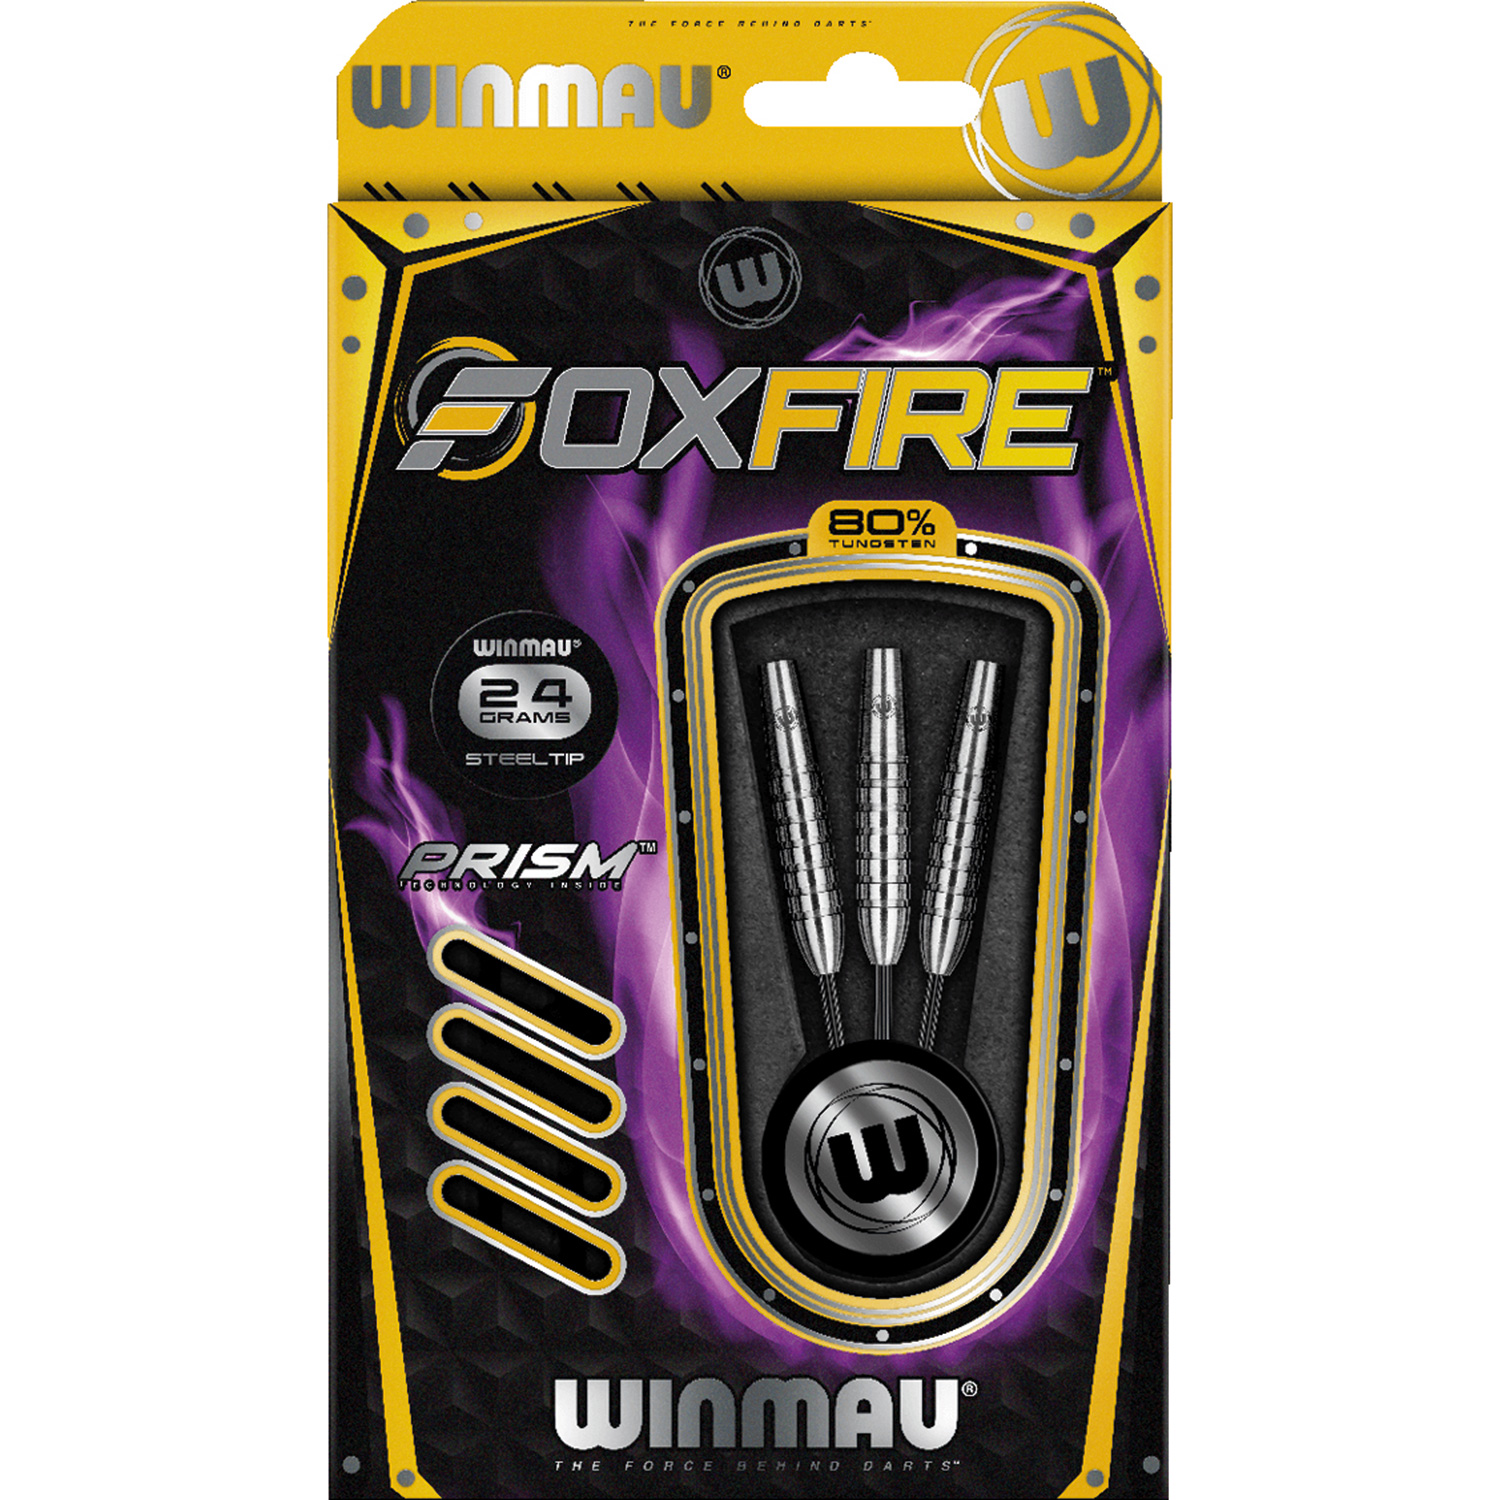 Winmau Foxfire 80% Tungsten 24